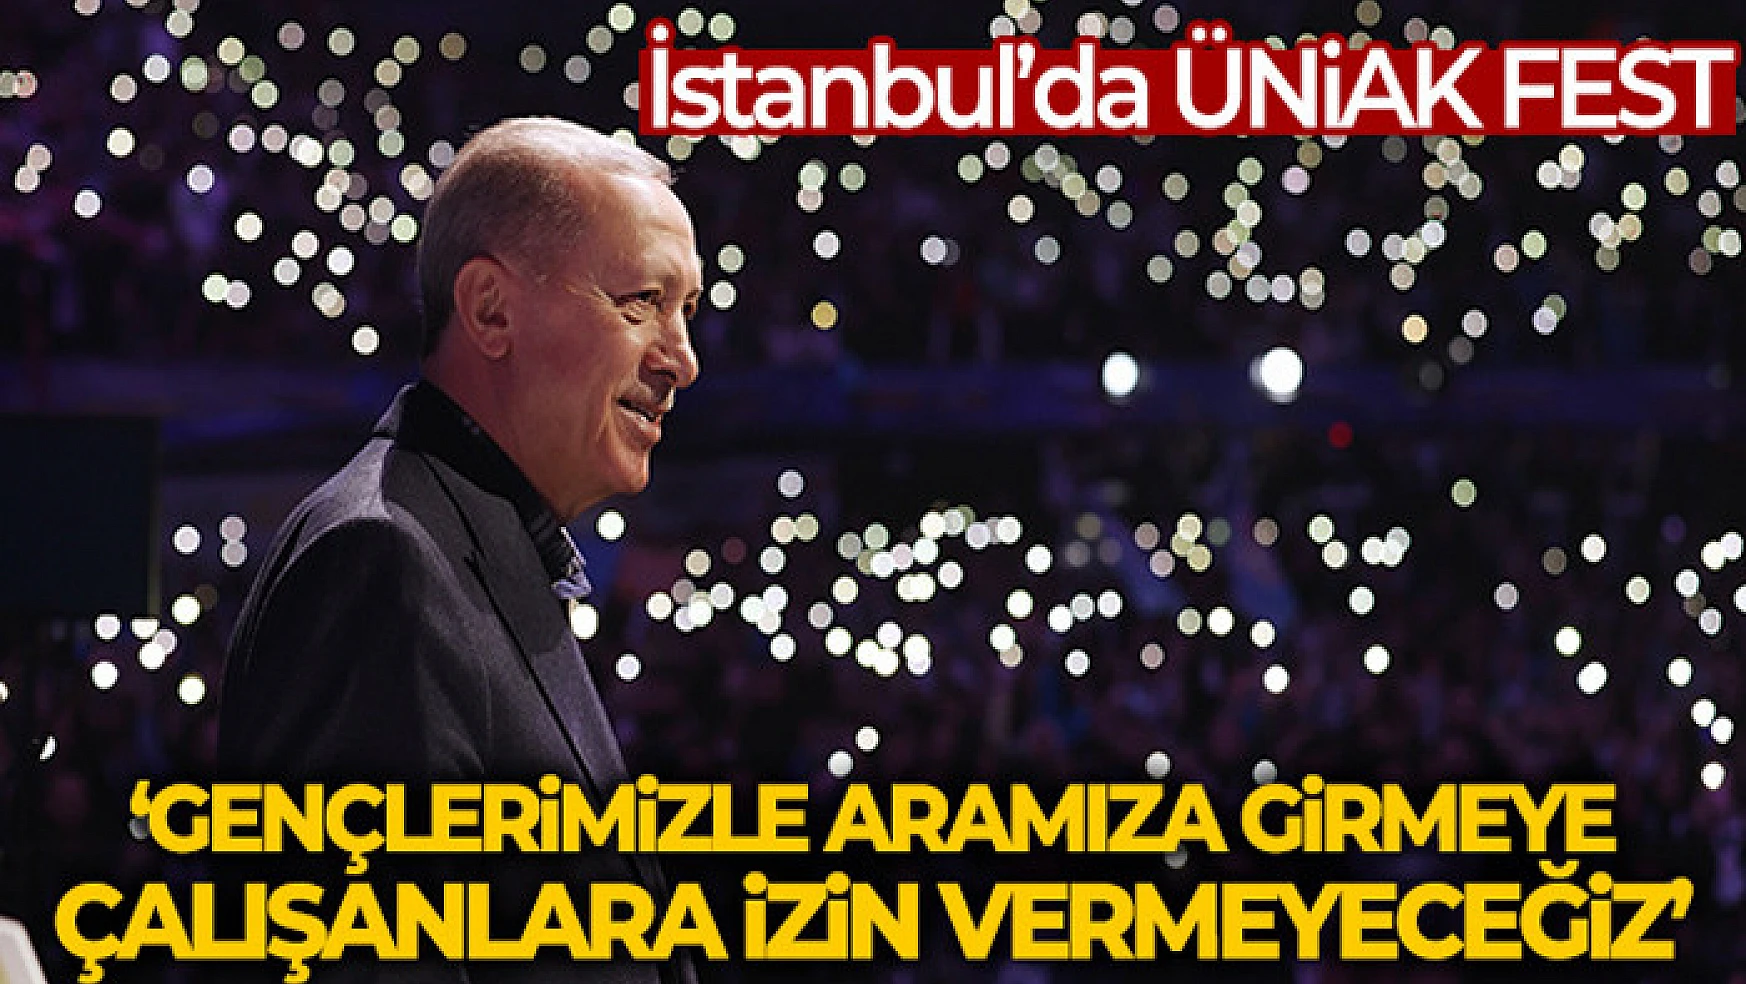 Cumhurbaşkanı Erdoğan: 'Gençlerimizle aramıza girmeye çalışanlara izin vermeyeceğiz'